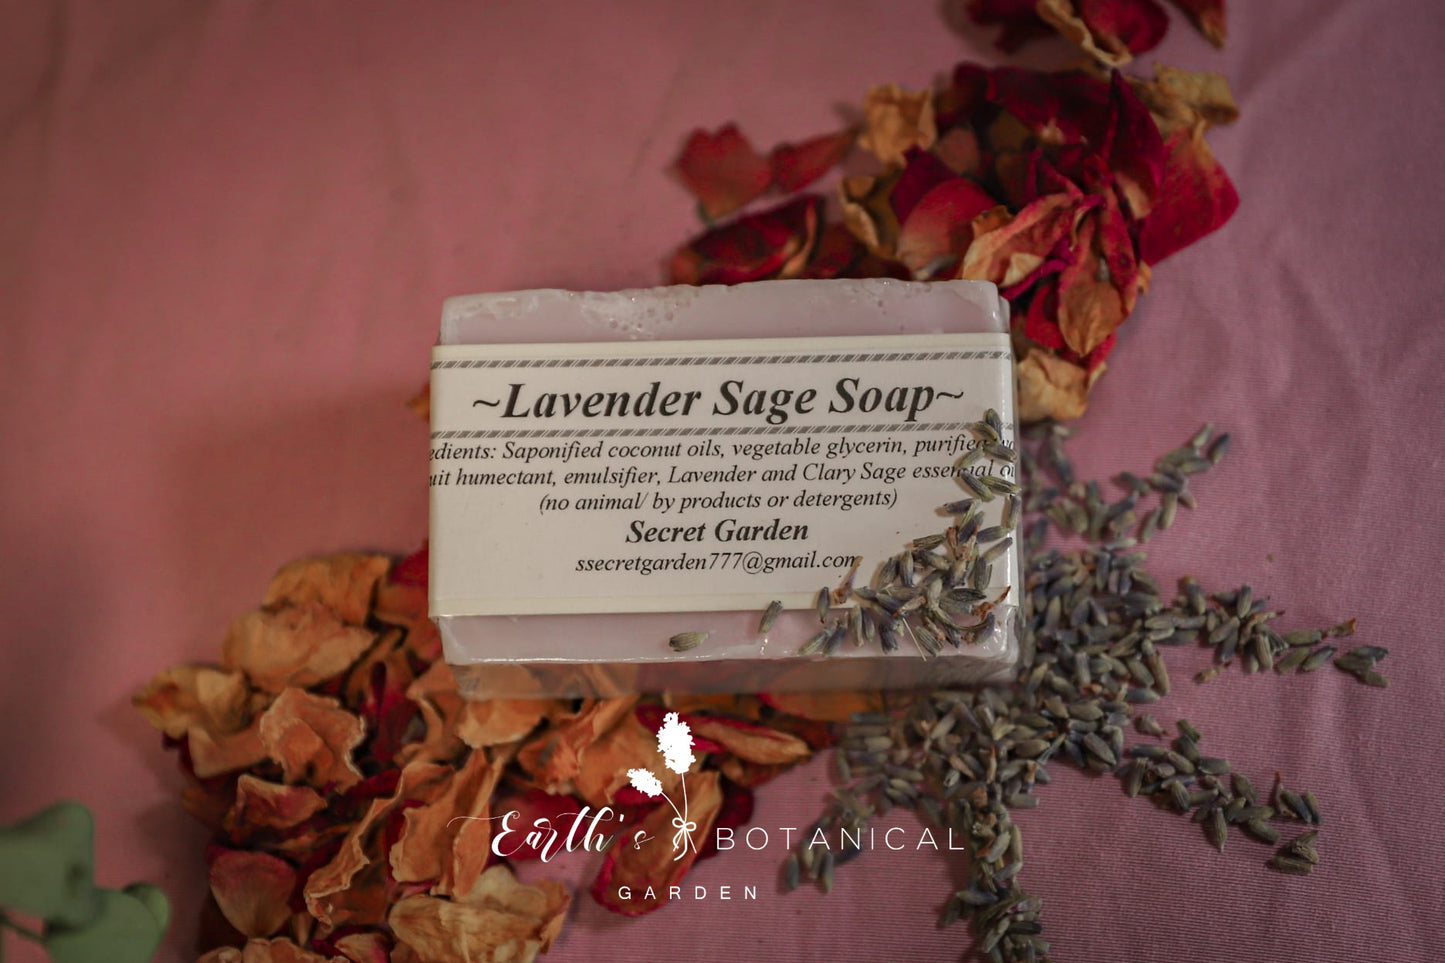 SG's Lavender Sage Soap